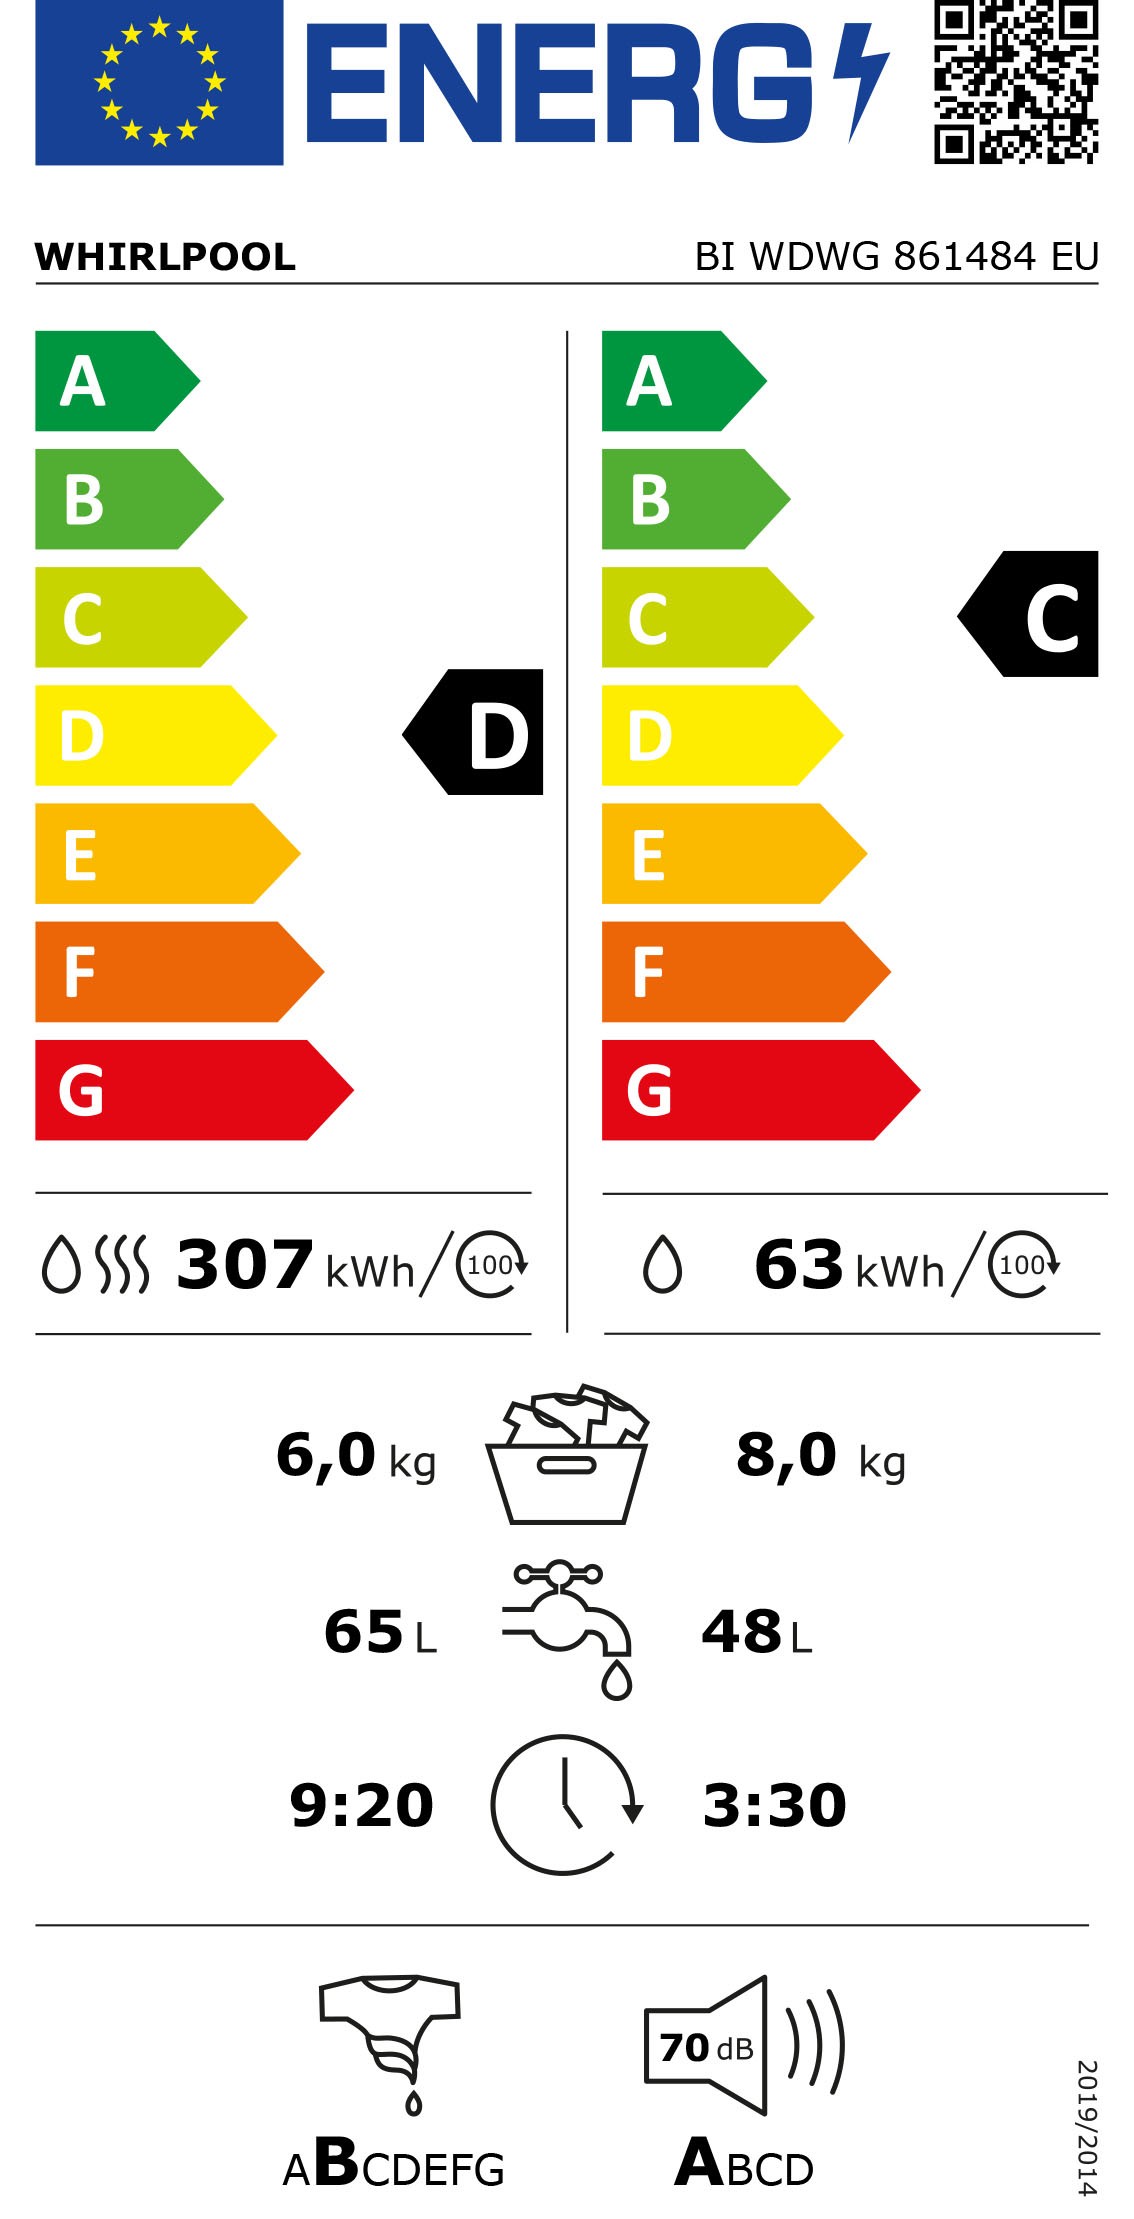 Etiqueta de Eficiencia Energética - BI WDWG 861484 EU